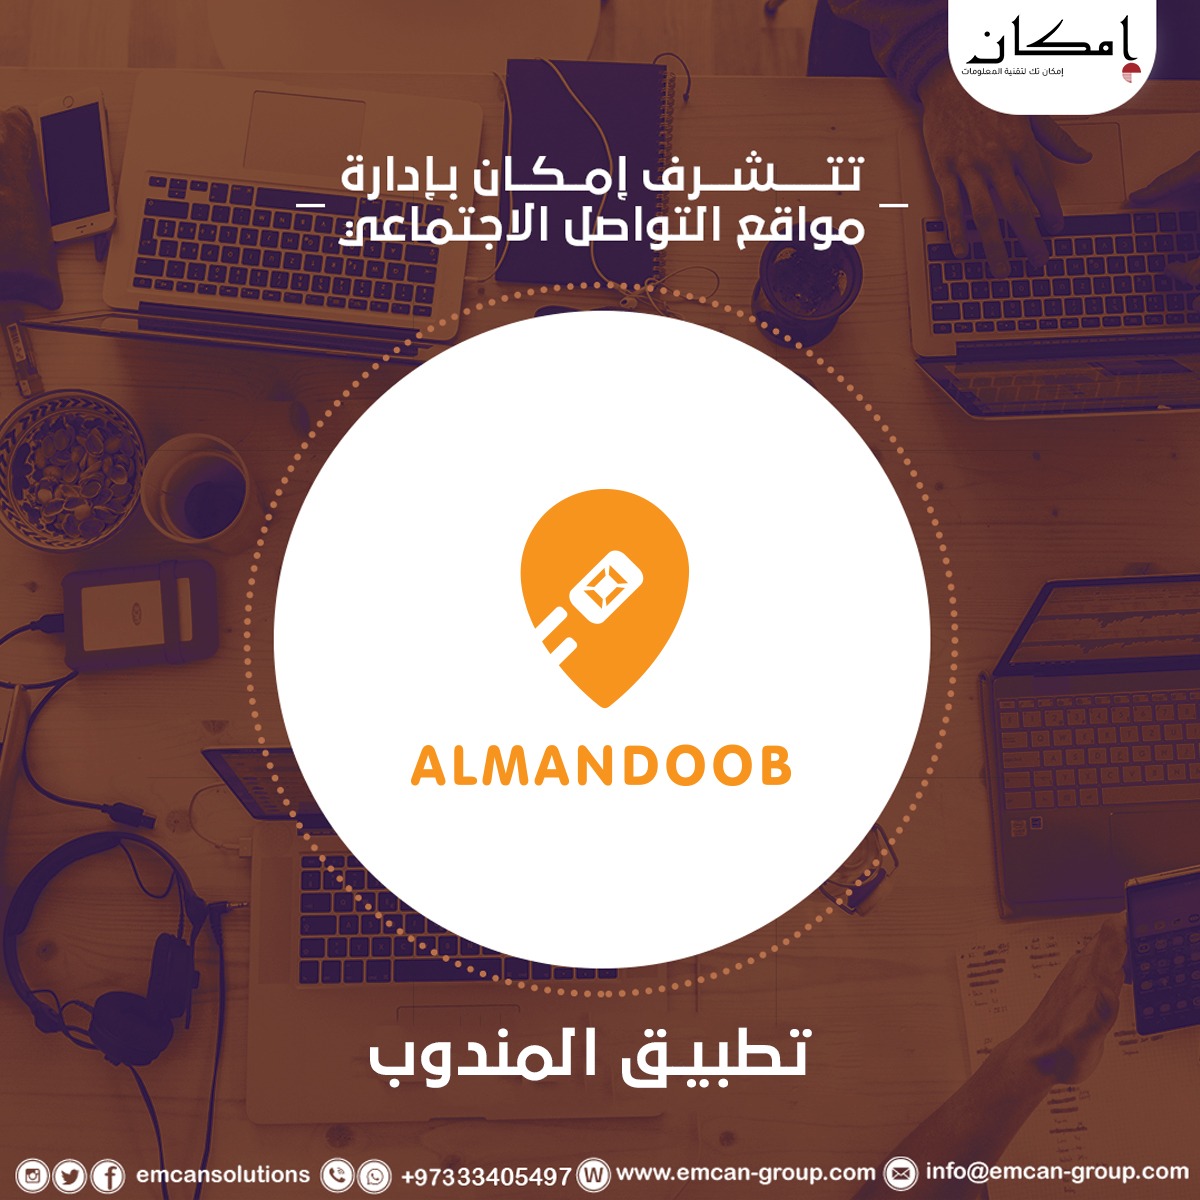 Managing social media for the Mandoob app